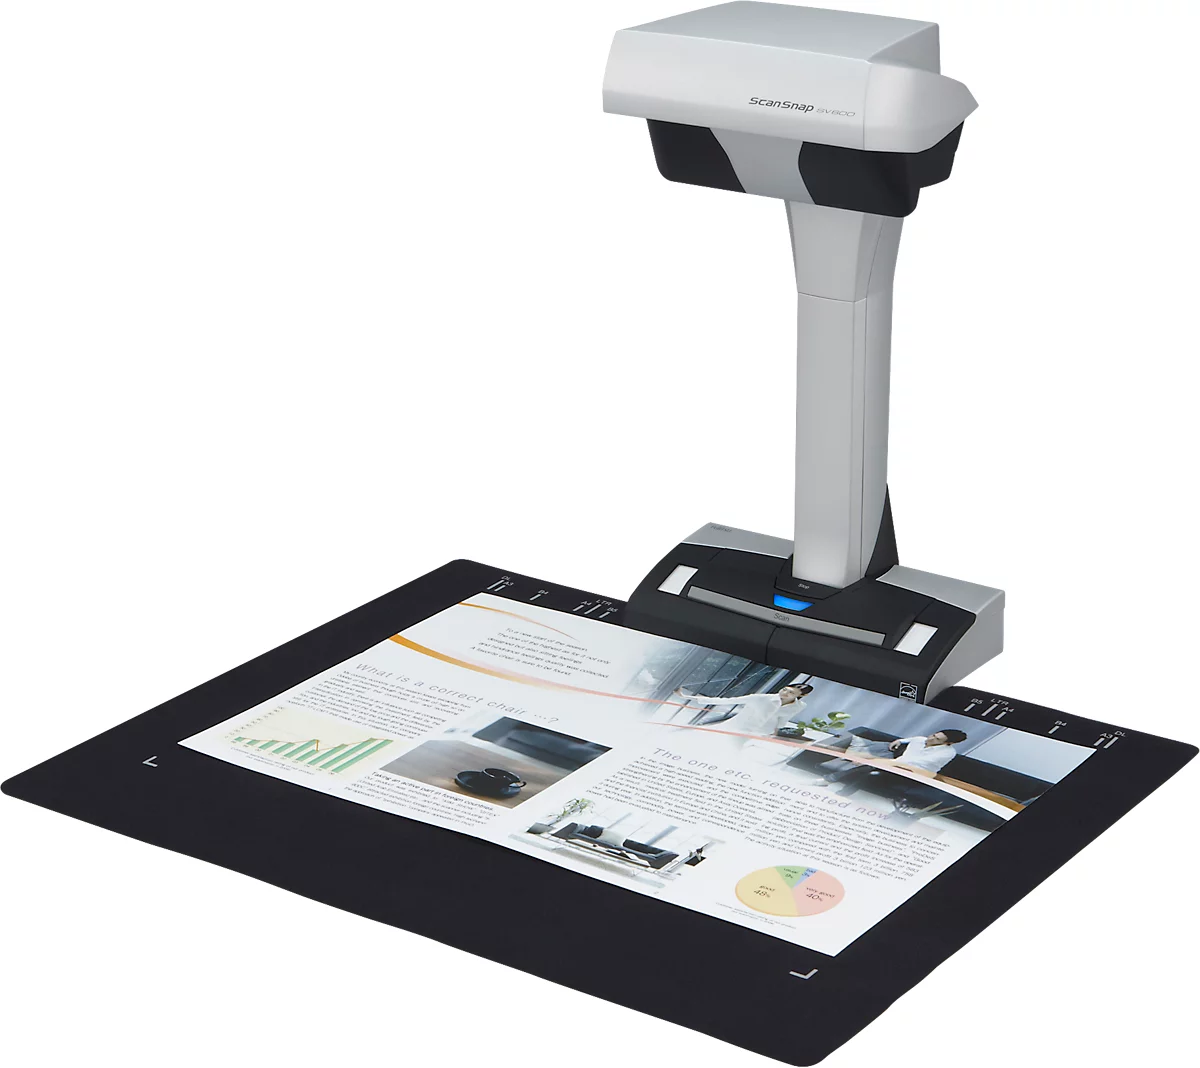 FUJITSU Overhead-scanner ScanSnap SV600 , voor ingebonden en platte documenten